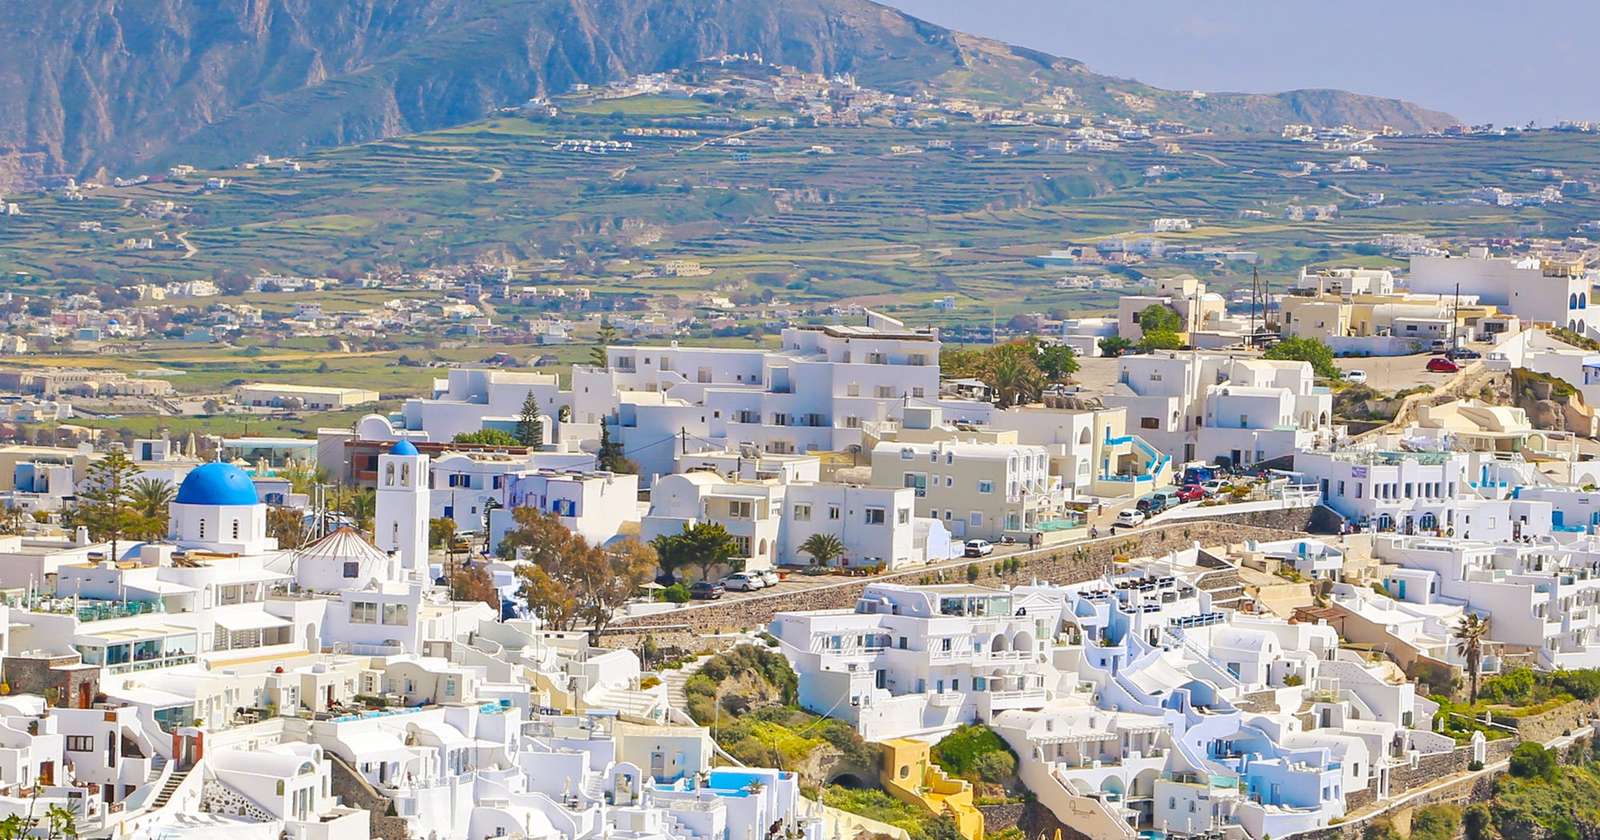 Un oraș de vizitat în Grecia puzzle online